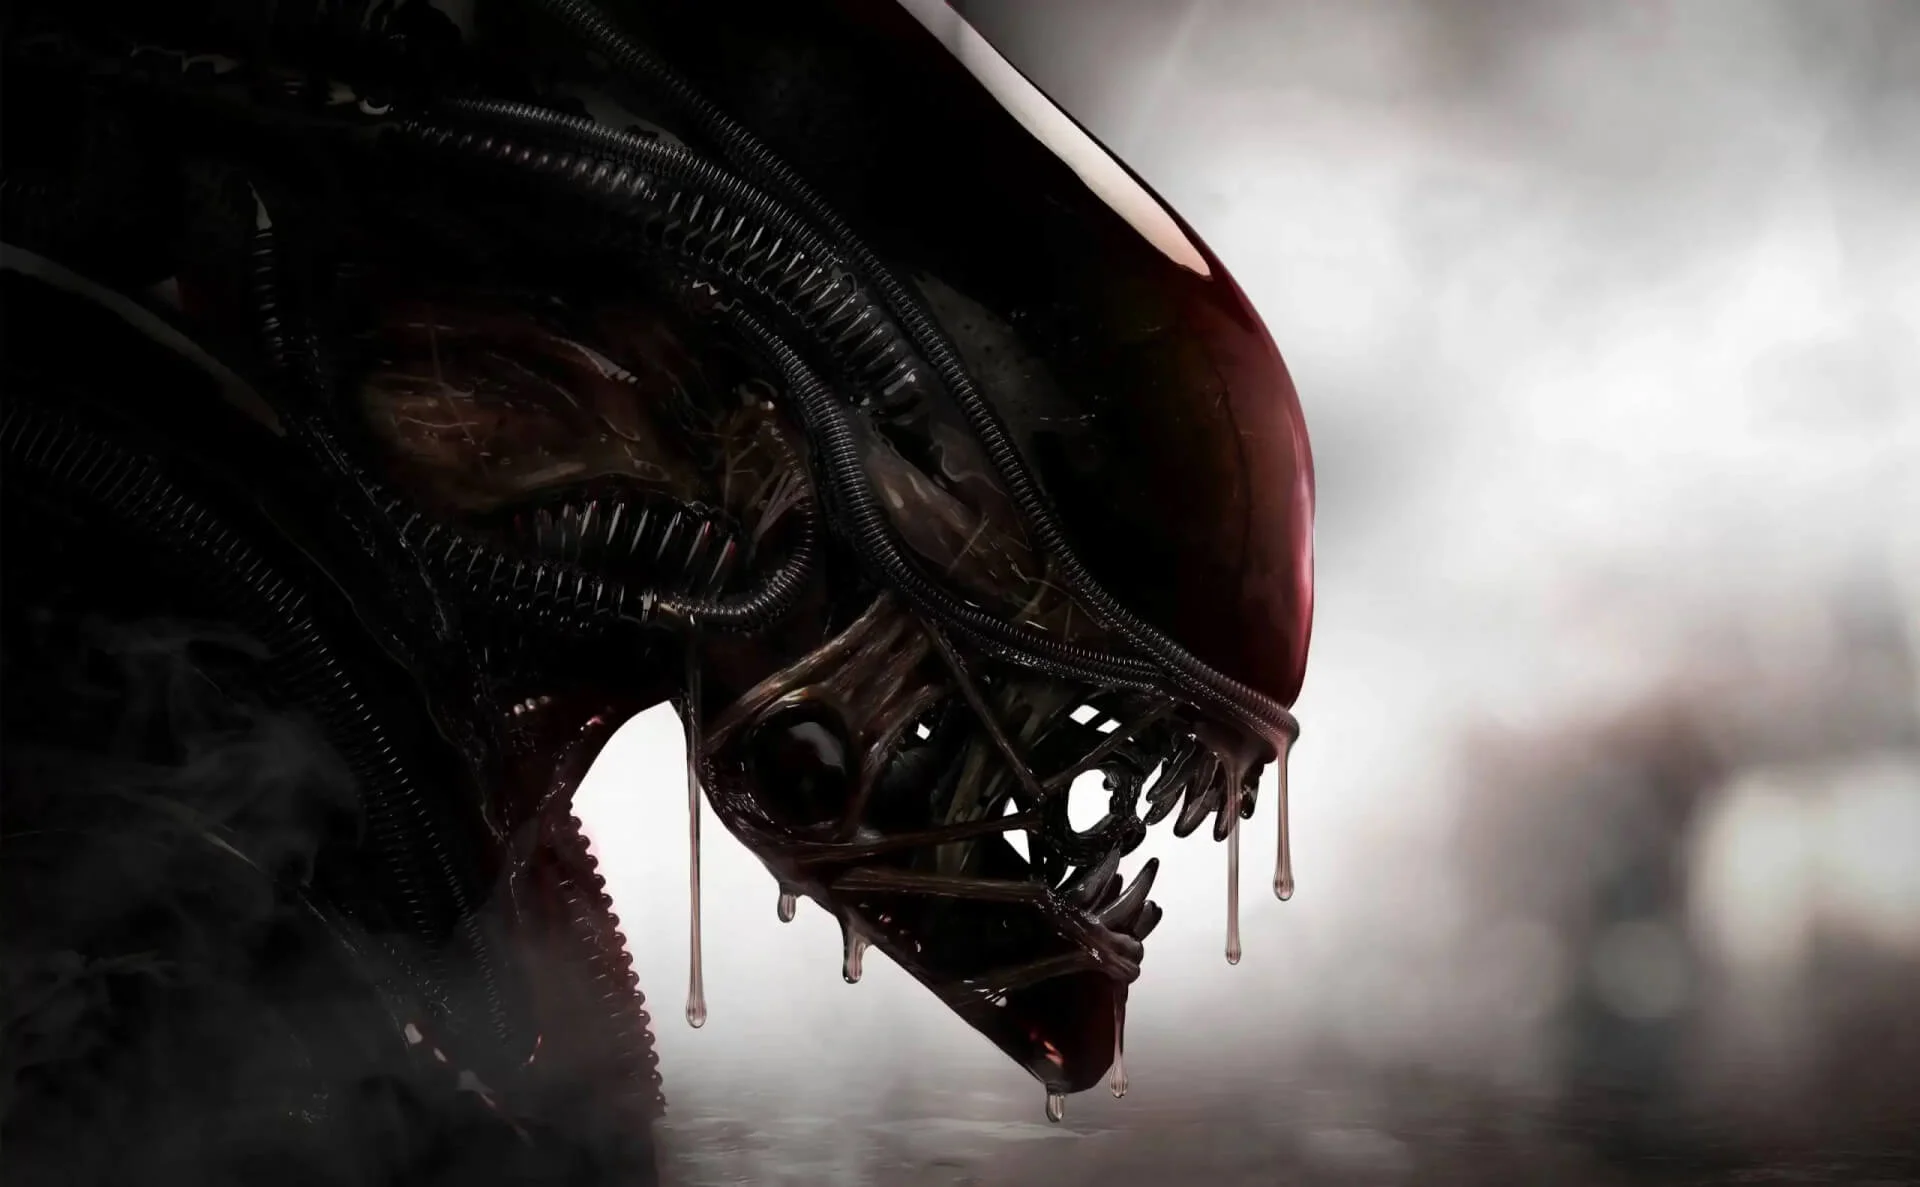 Kiderült, ki játssza az Alien élőszereplős sorozatának főszereplőjét